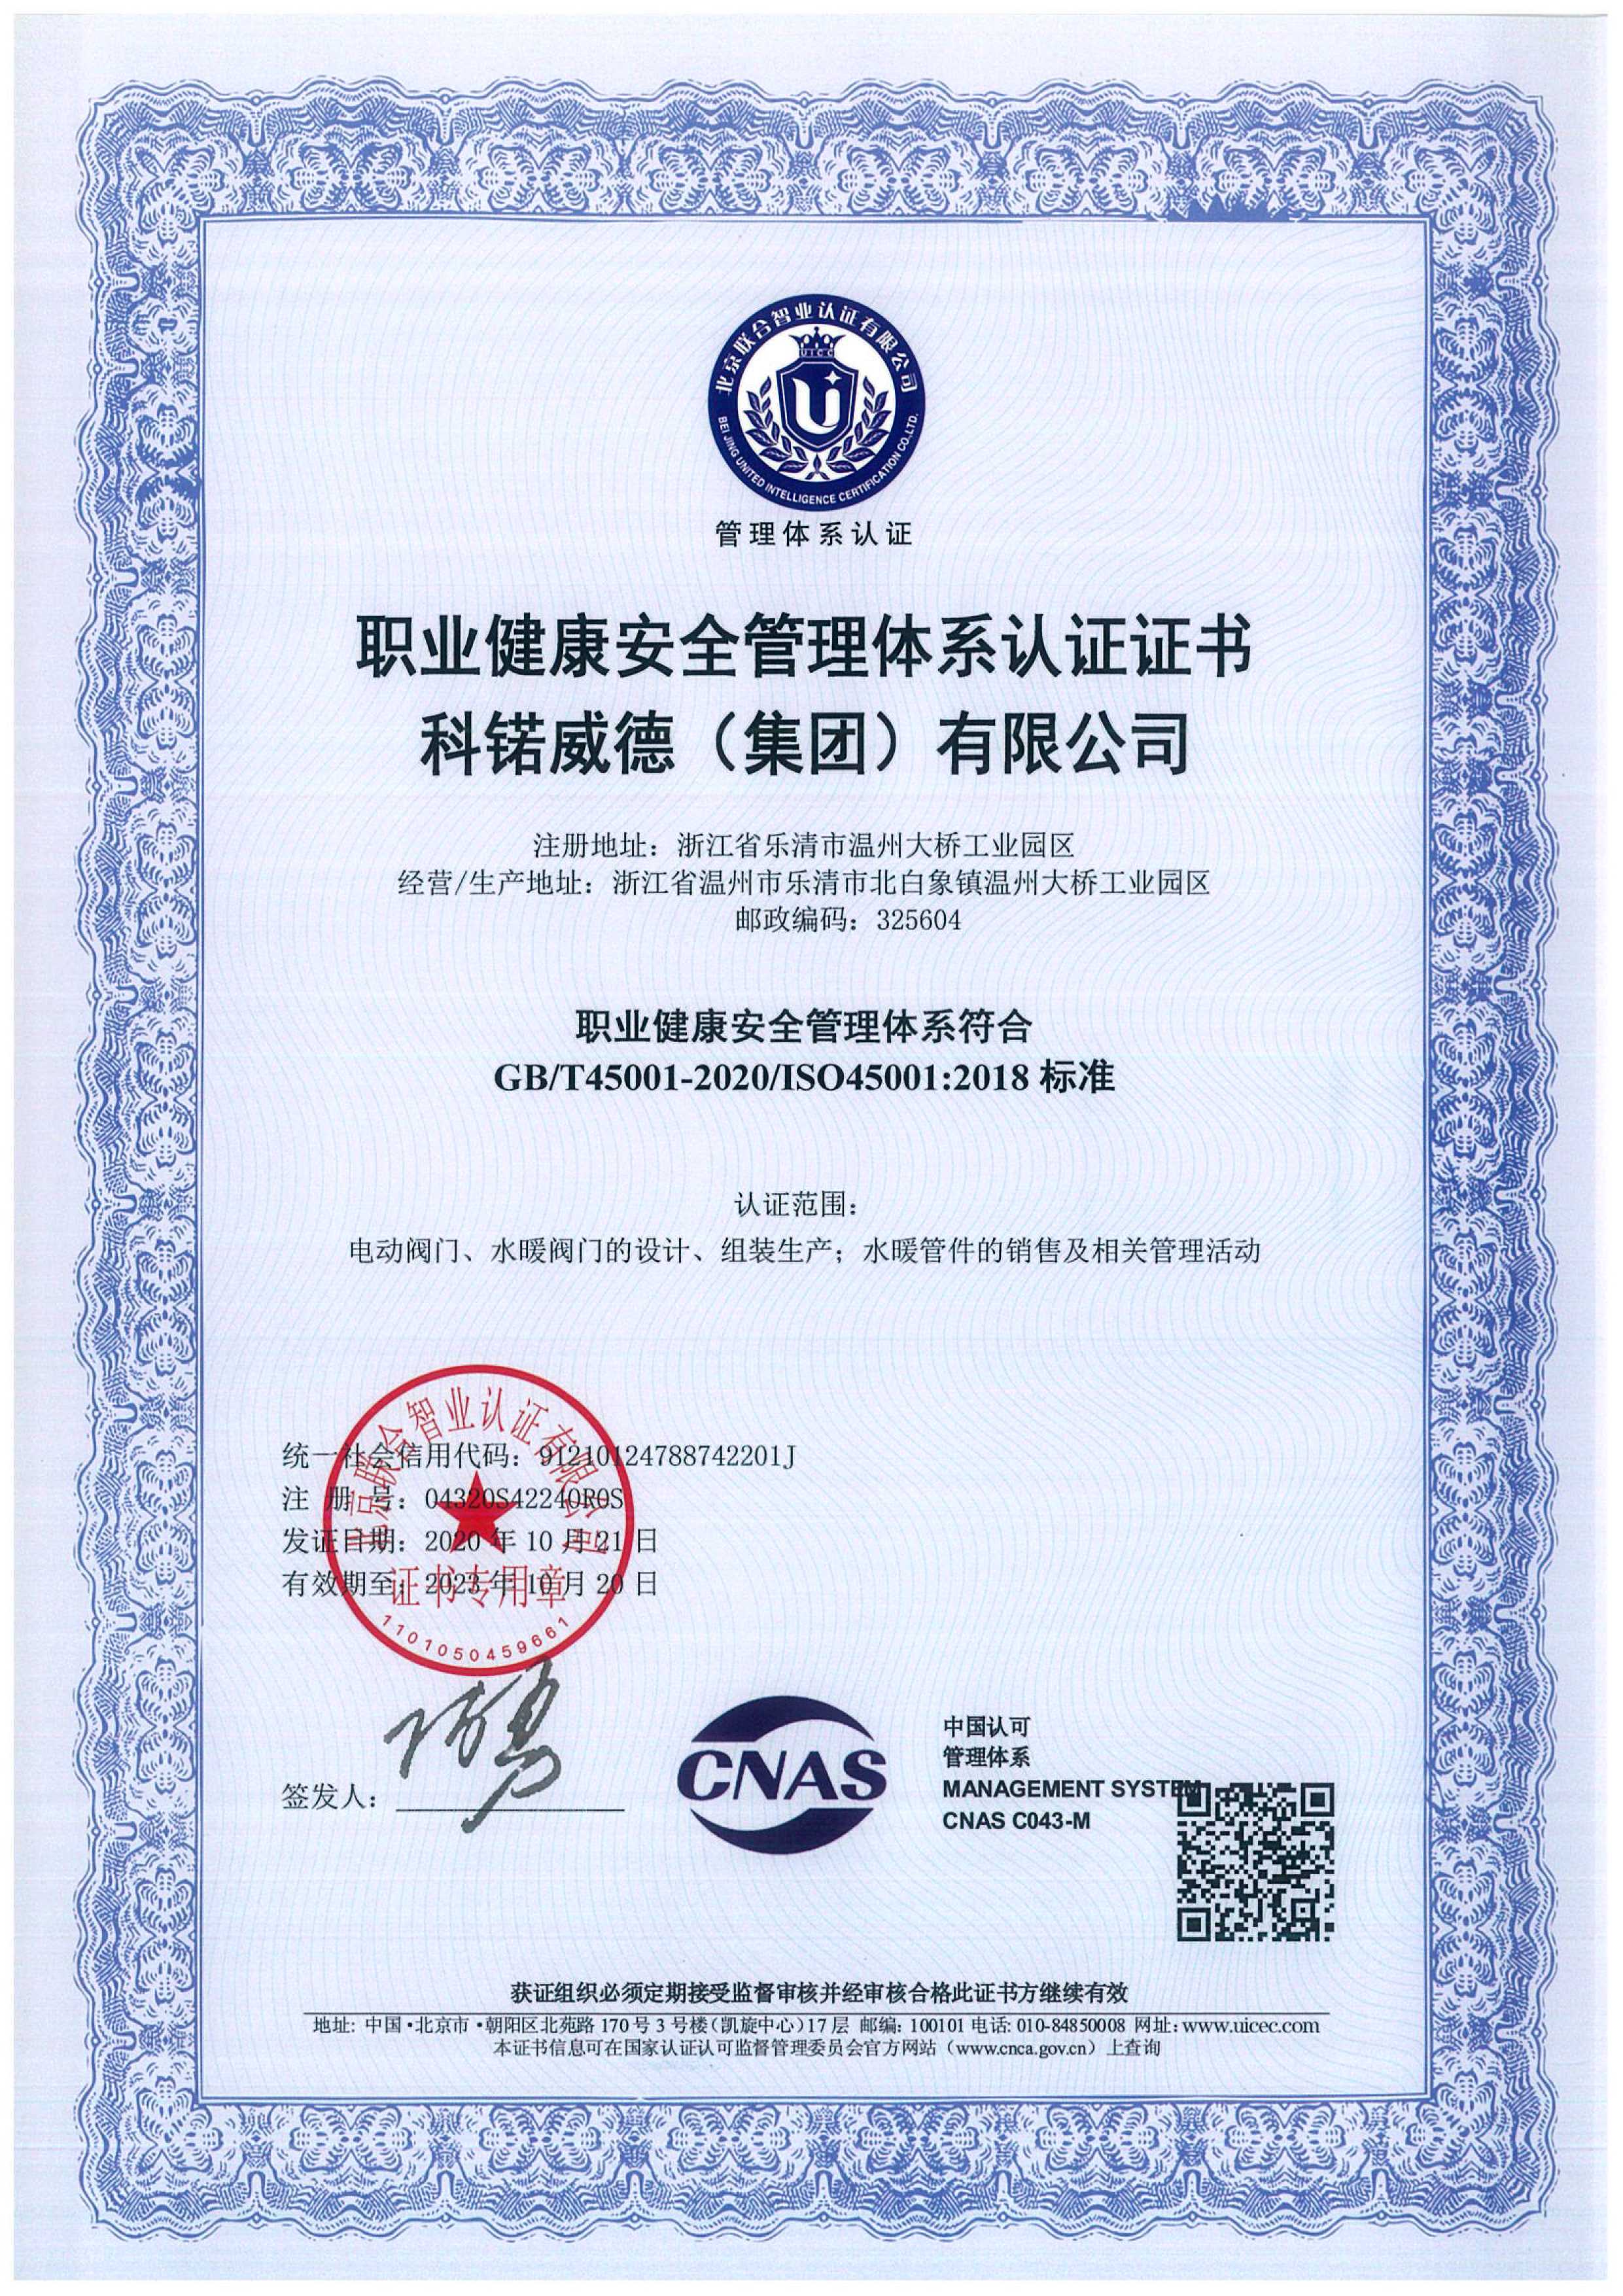 14001环境管理体系认证证书ISO45001职业健康安全管理体系认证证书